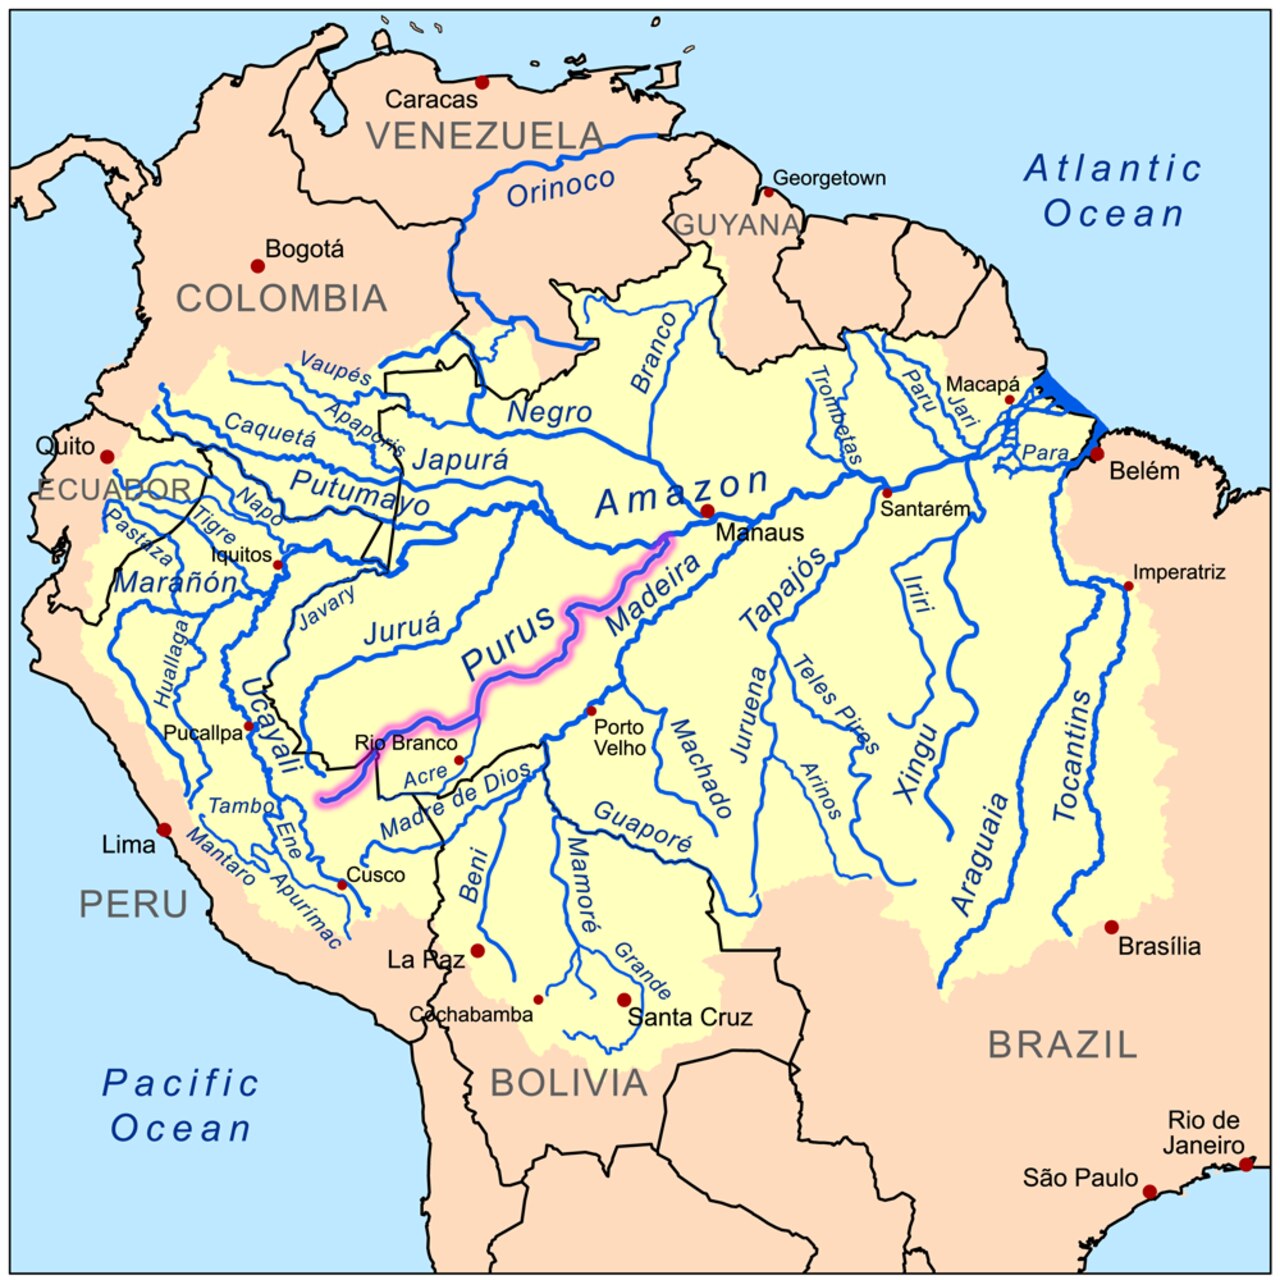 Τεχνητή Νοημοσύνη: το Purus είναι ένας επιβλητικός ποταμός στη Νότια Αμερική, ο οποίος ρέει για 3.211 χιλιόμετρα βορειοανατολικά για να χυθεί τελικά στον ποταμό Αμαζόνιο